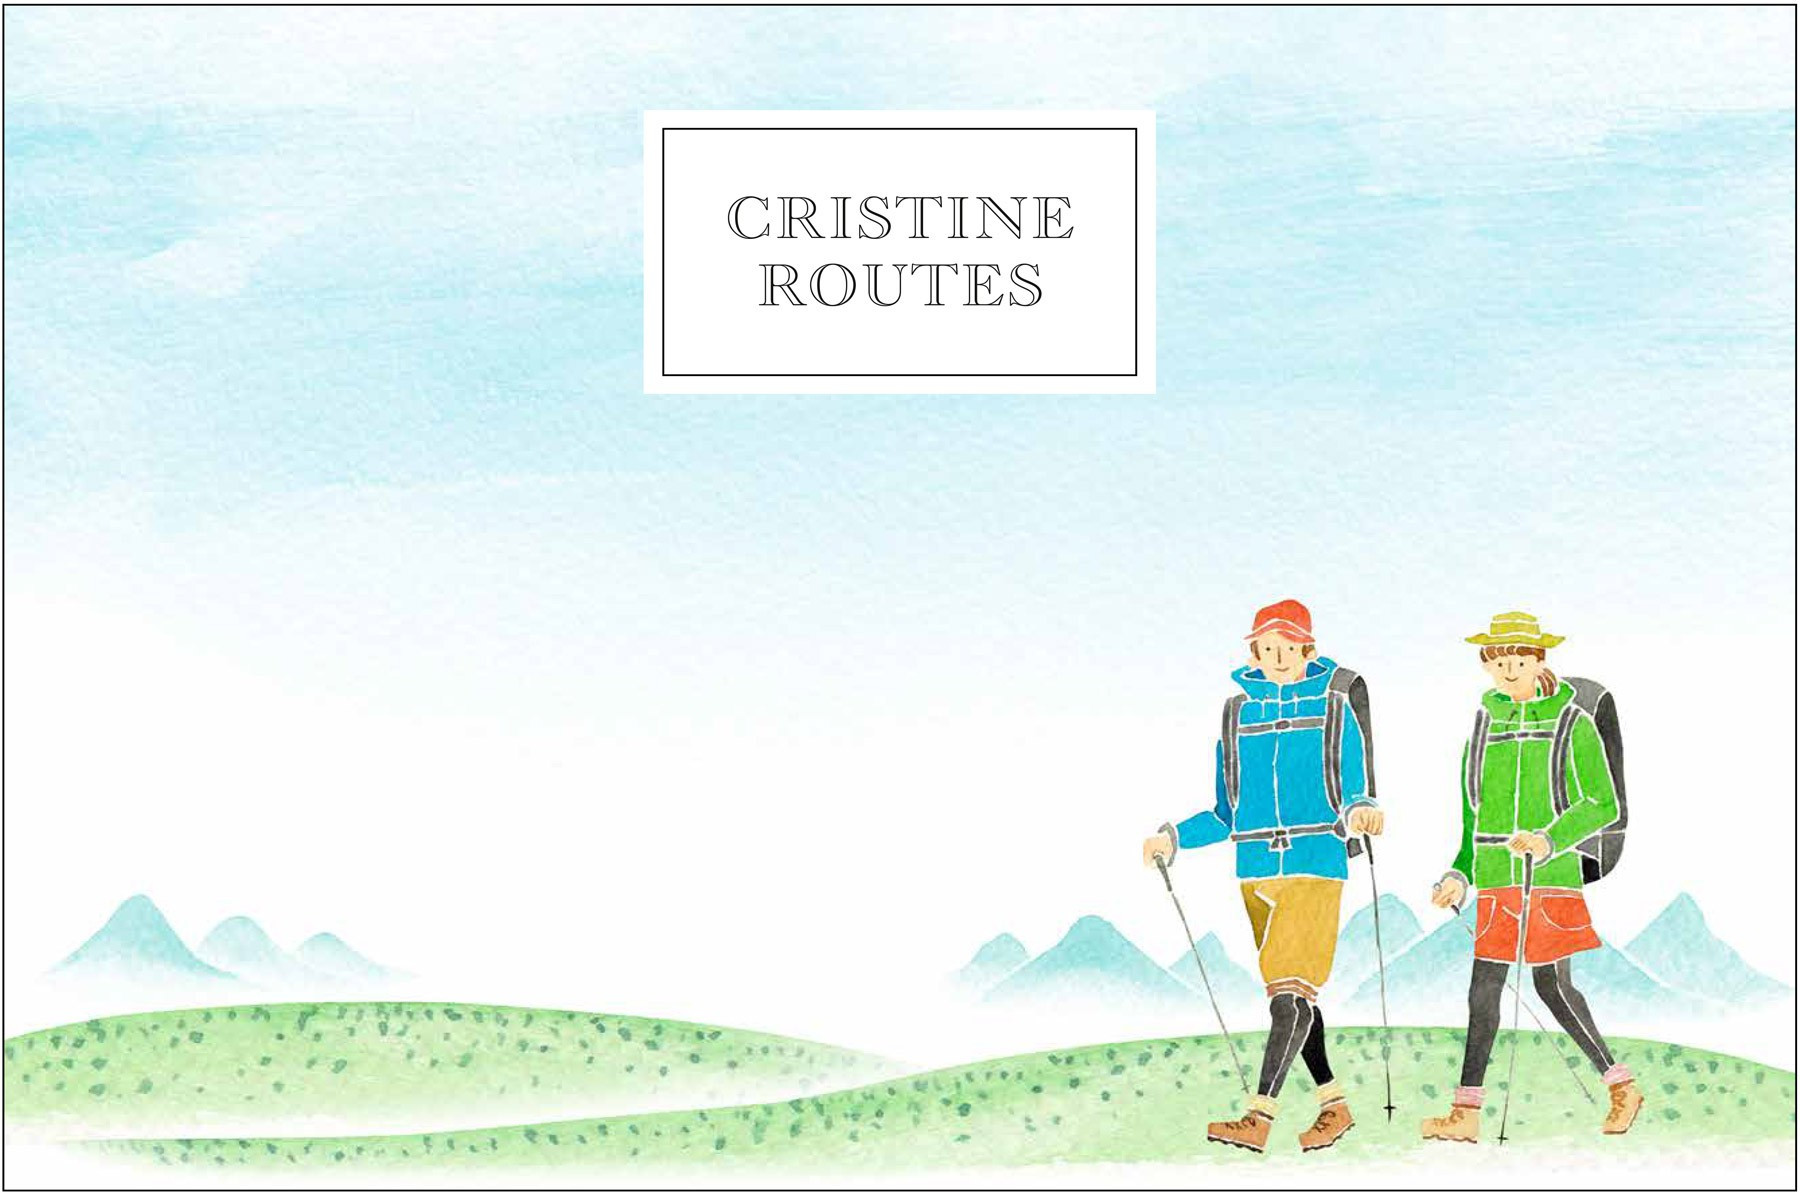 Illustration avec des randonneurs en montagne et texte "Cristine Routes".